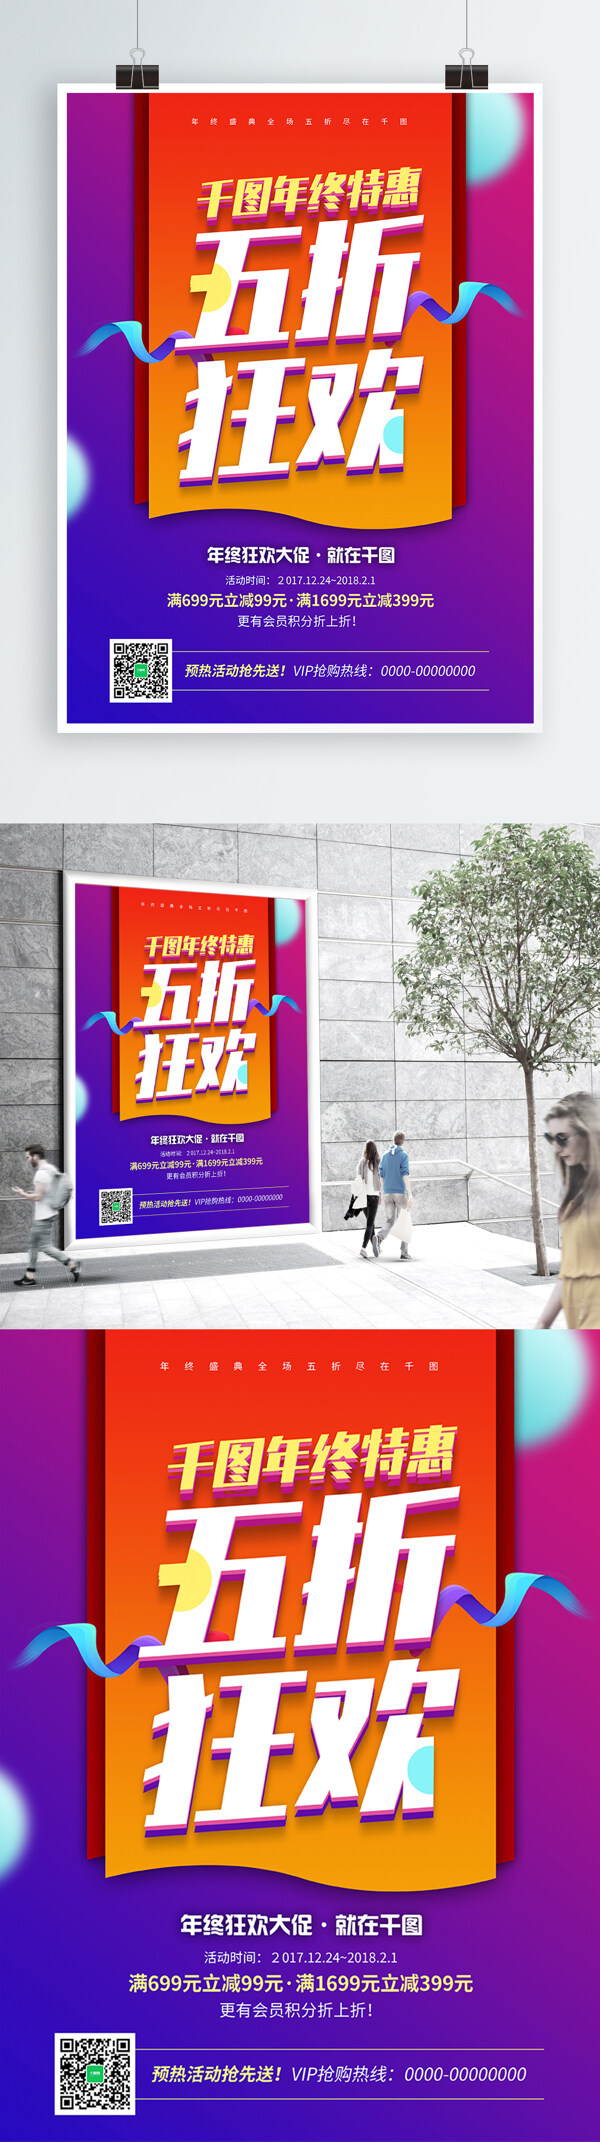 炫彩五折狂欢促销海报PSD模板